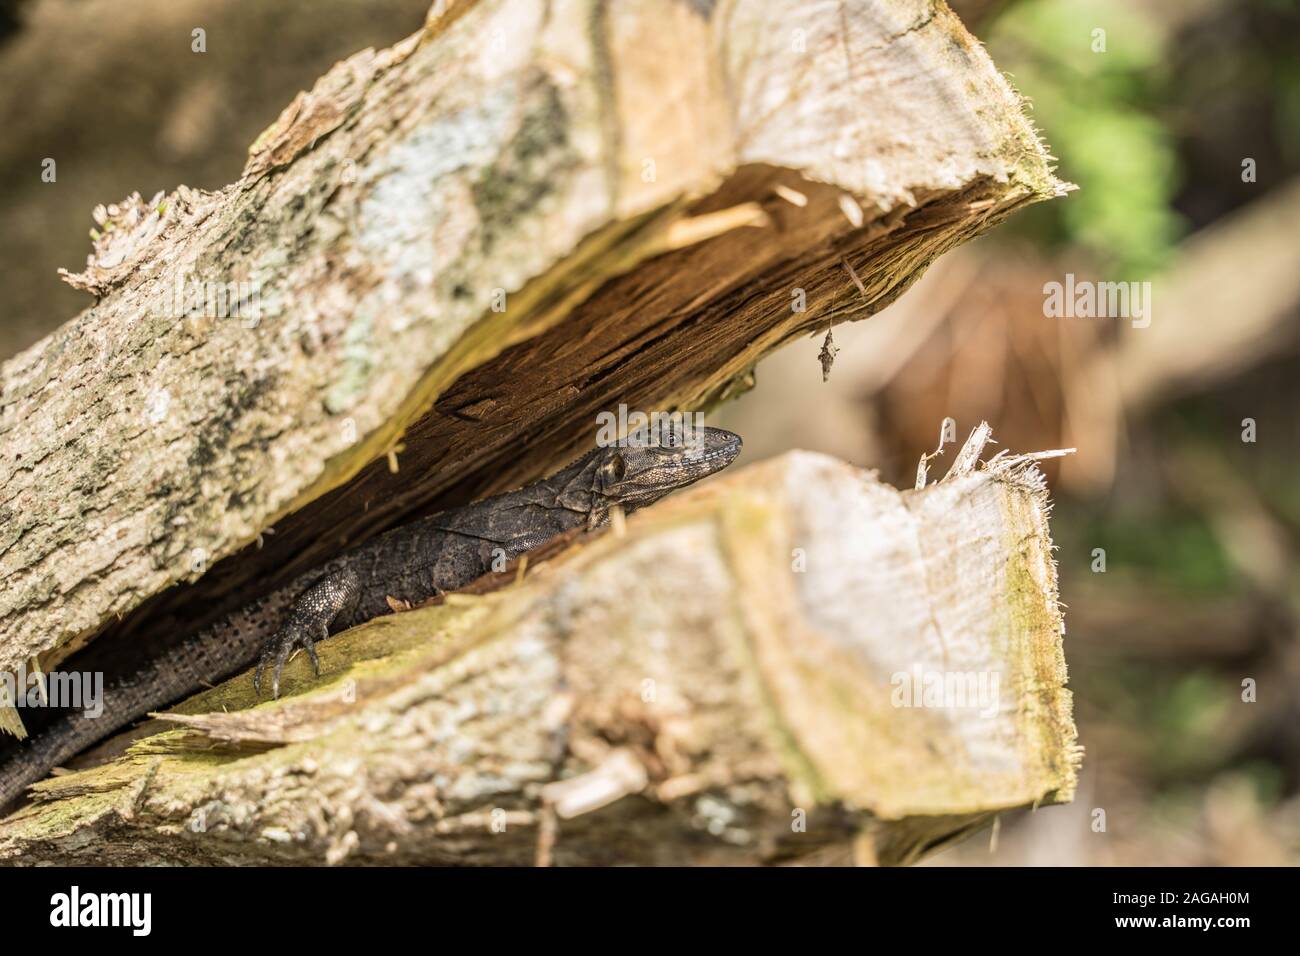 A lizard in the jungle. Stock Photo